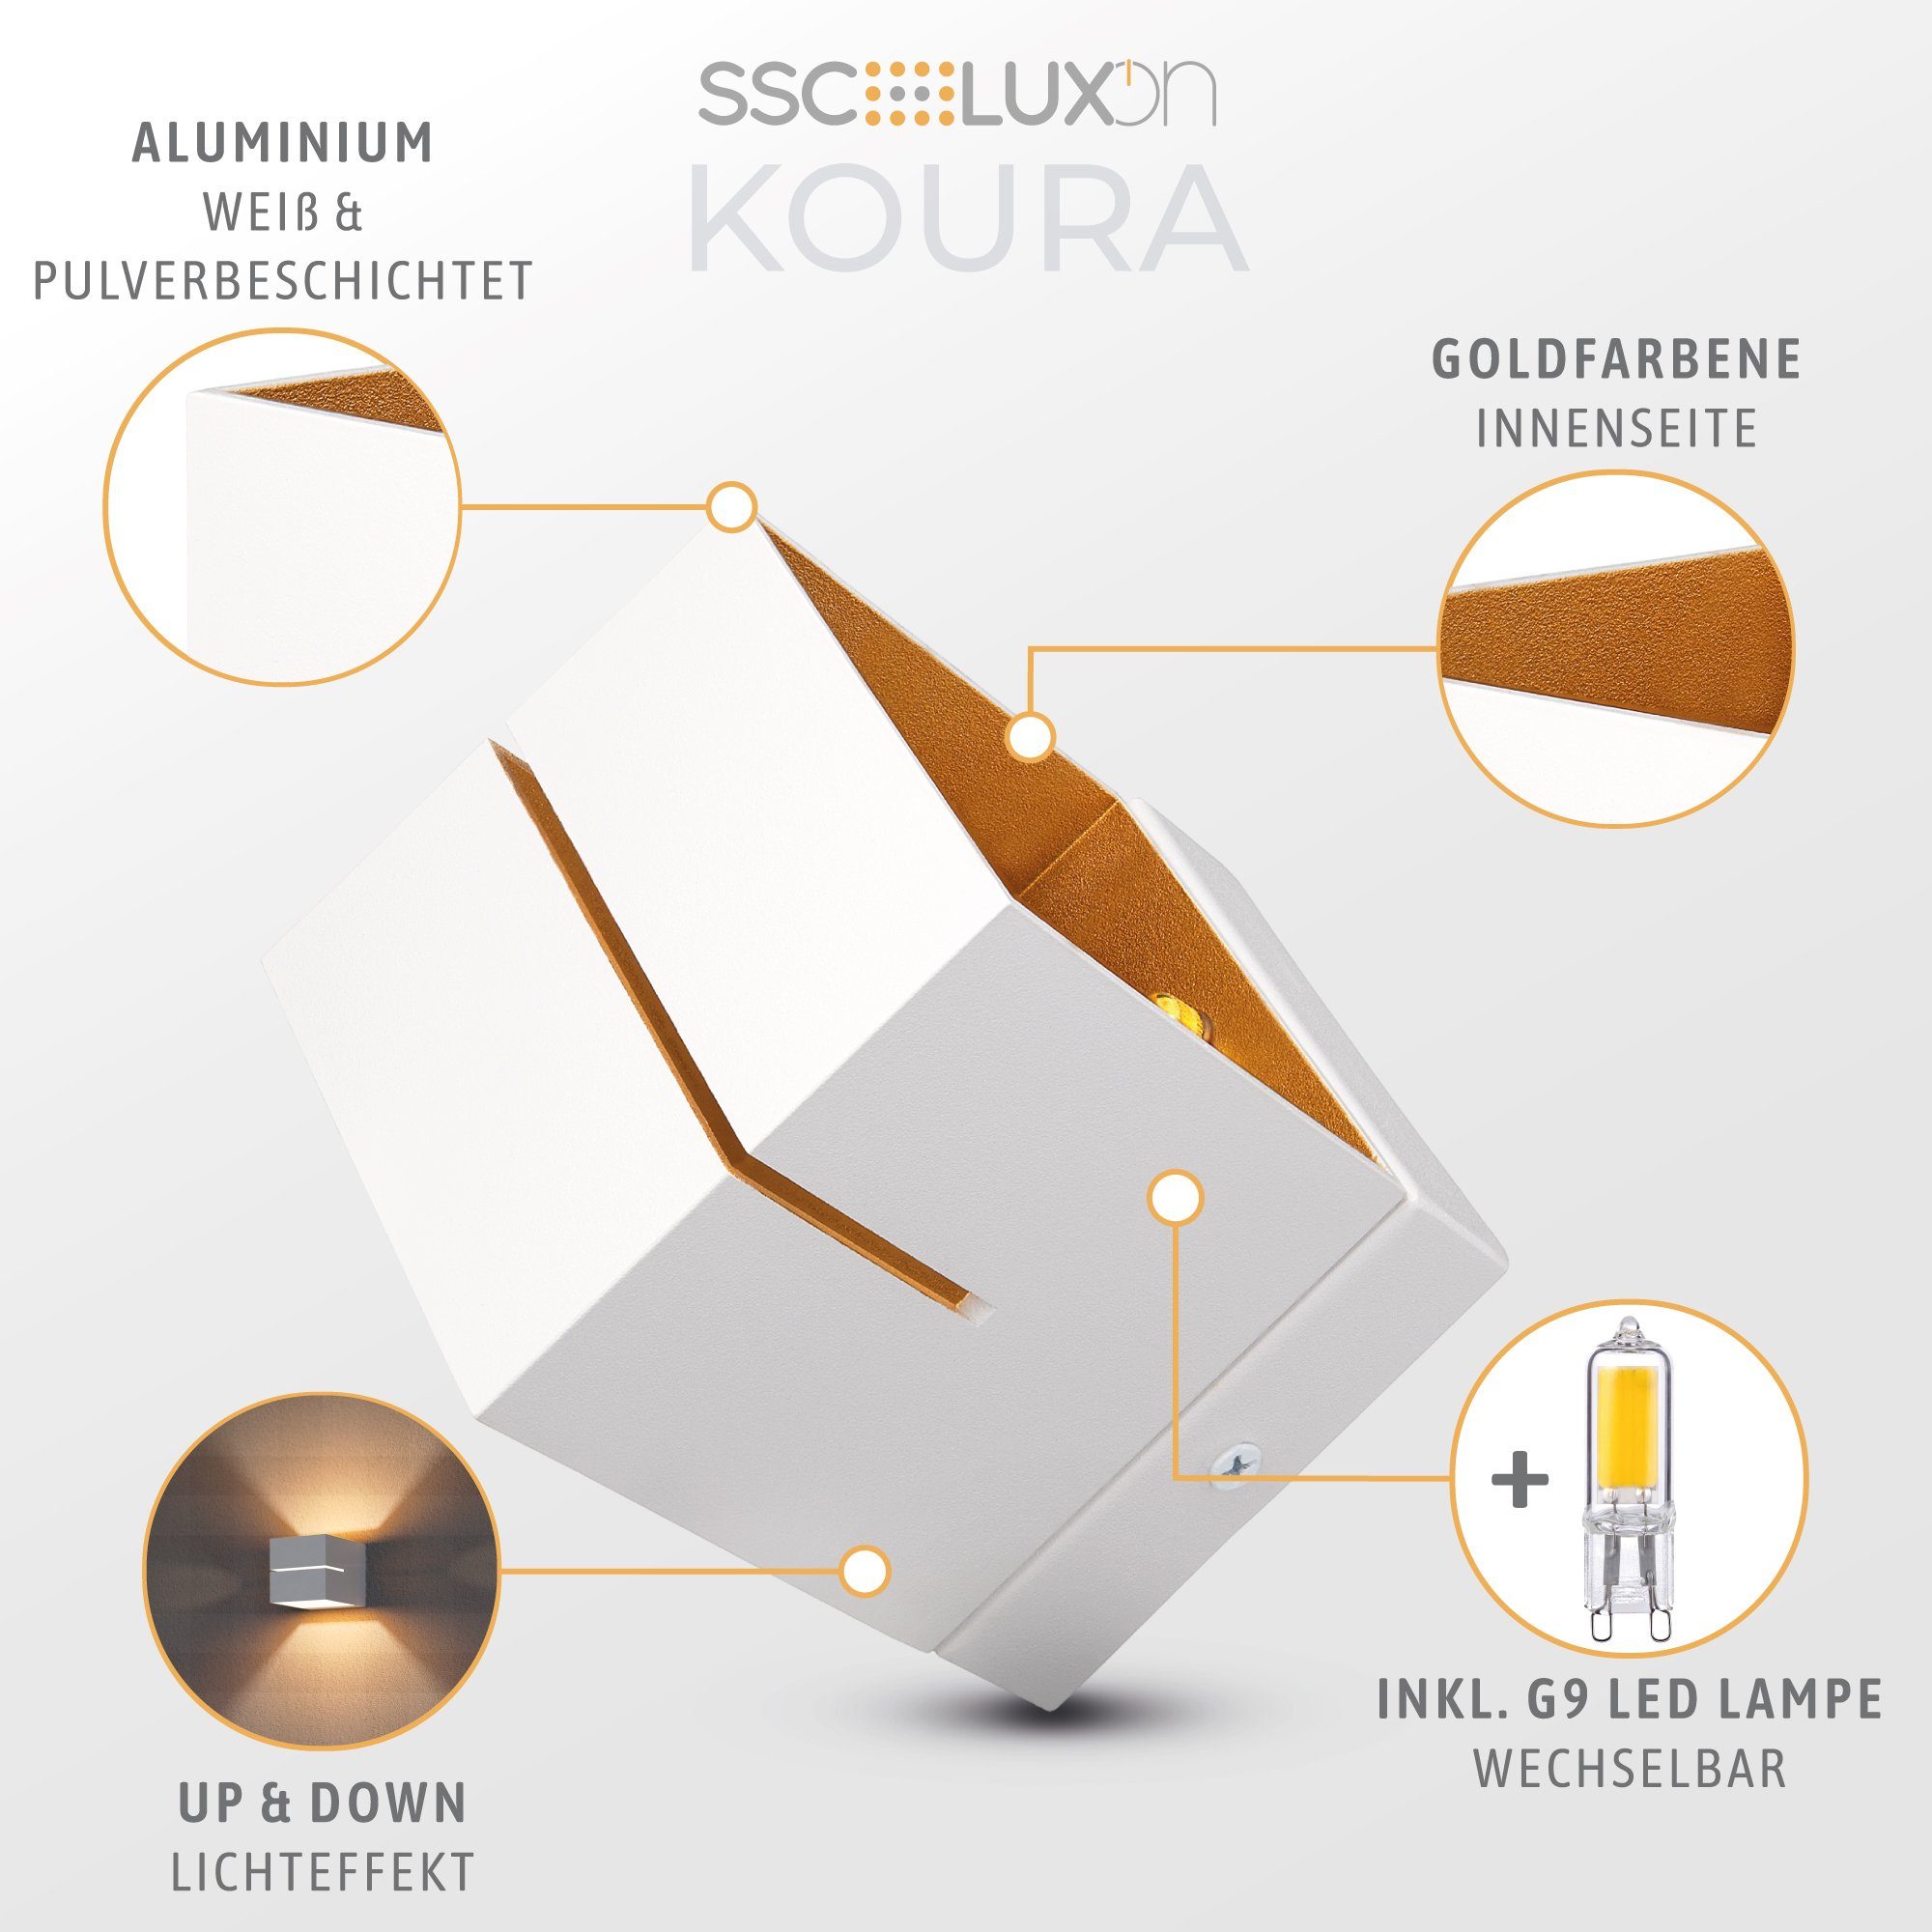 Warmweiß Wandlampe Up KOURA Wandleuchte SSC-LUXon 2W, mit weiß G9 LED Lichtspalt gold LED Down